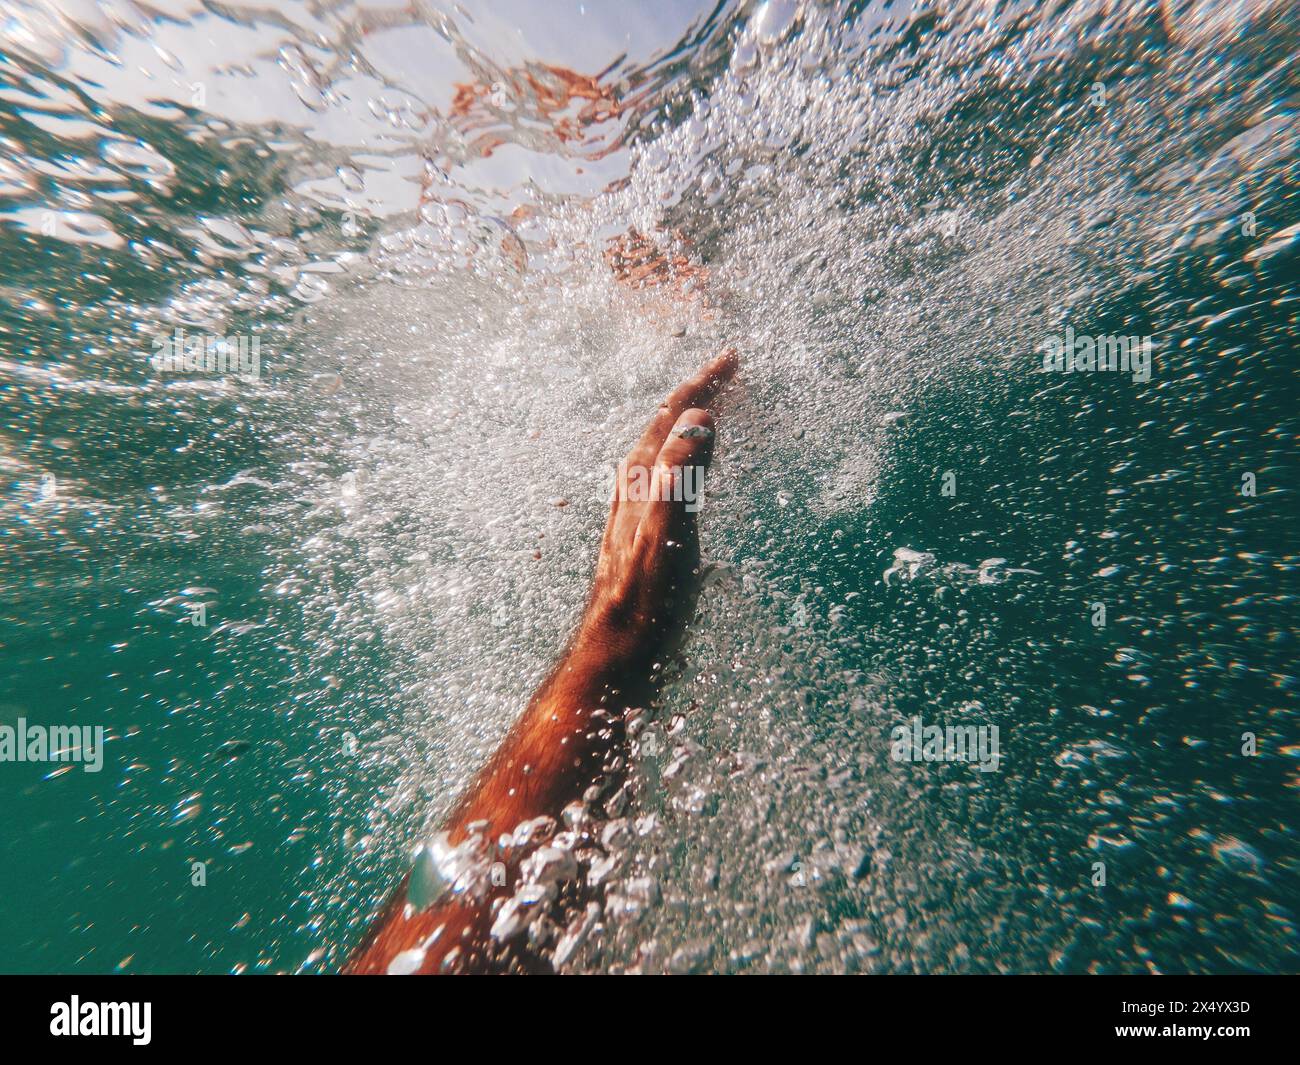 Ein Mann ertrinkt im tiefblauen Meer, aus der Nähe der Hand, die zur Meeresoberfläche reicht, umgeben von einer Luftblase, ein Schwimmer kämpft um sein Leben, selektiv für ihn Stockfoto